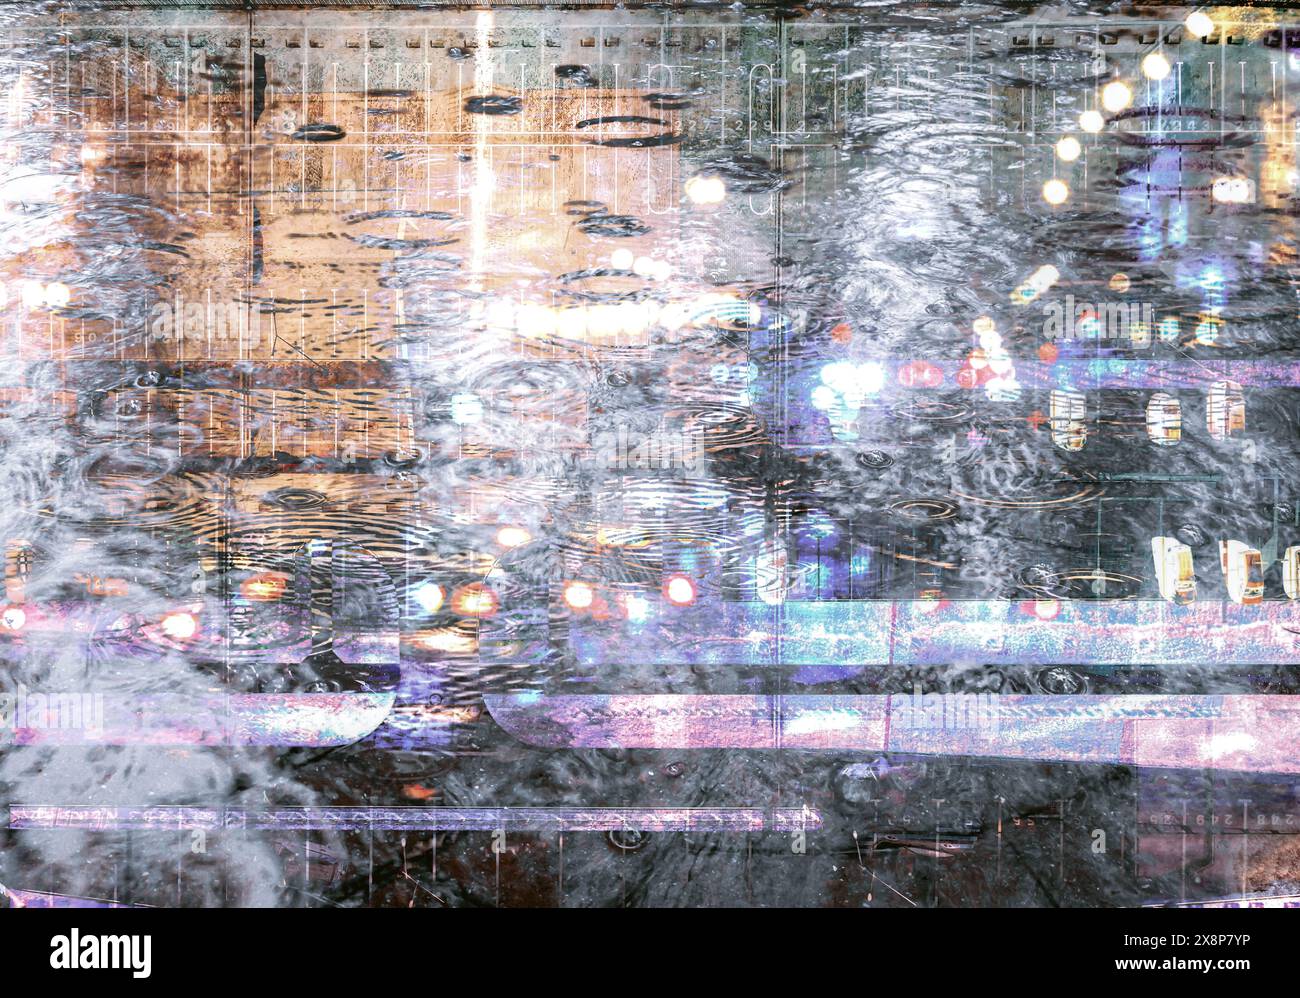 Abstrakter urbaner Hintergrund mit Mehrfachbelichtung. Regnerisches Wetter. Nachtblick. Stockfoto